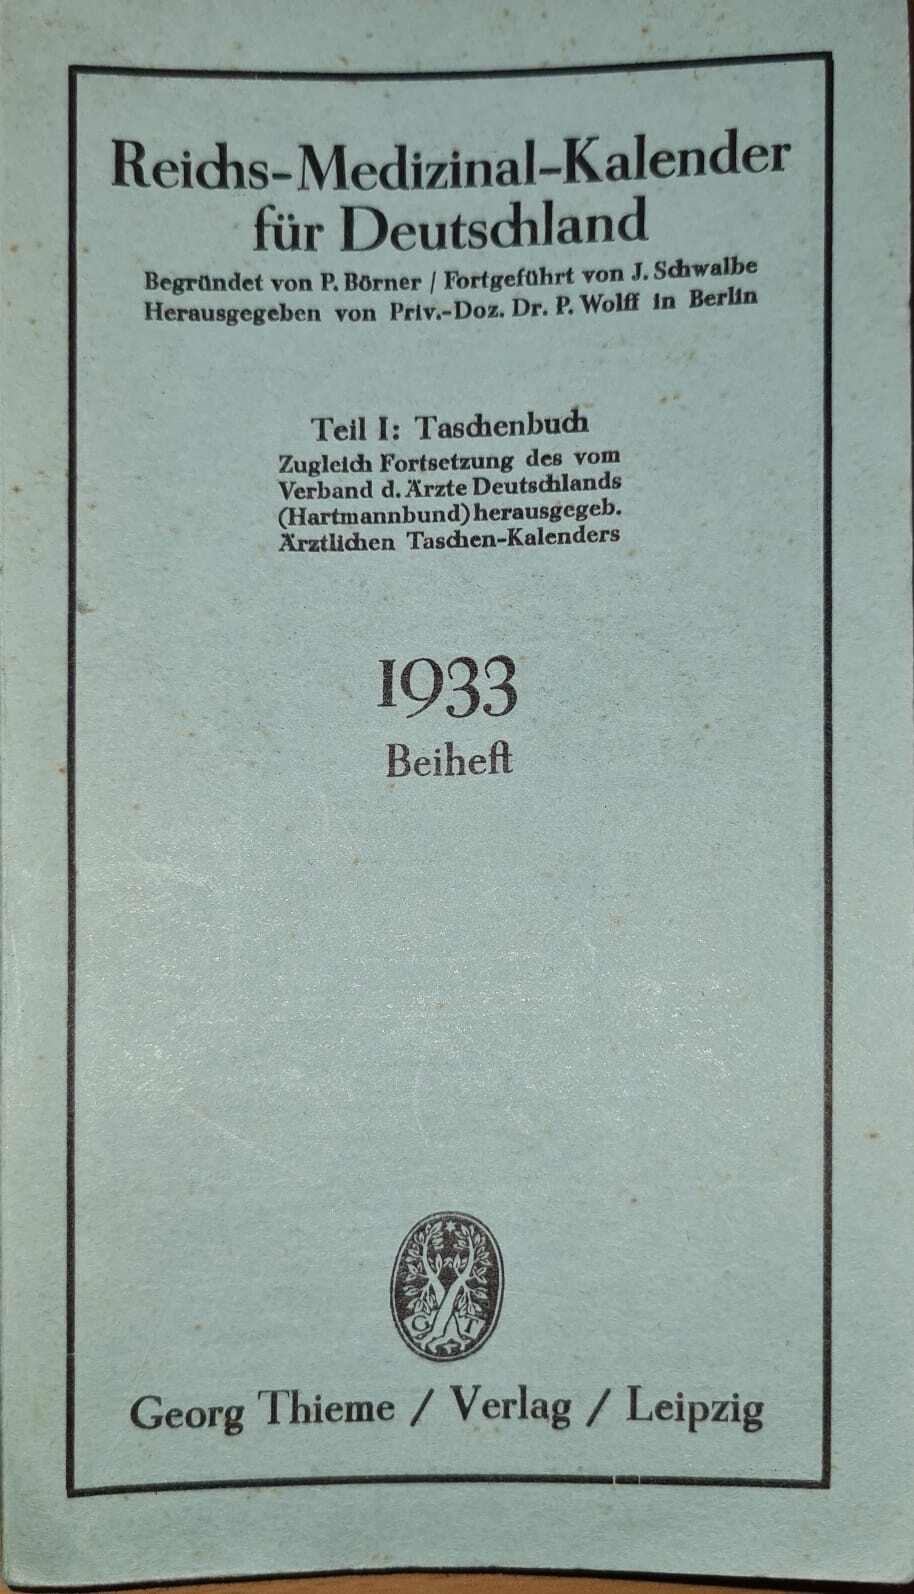 Reichs-Medizinal-Kalender für Deutschland 1933, Beiheft (Krankenhausmuseum Bielefeld e.V. CC BY-NC-SA)